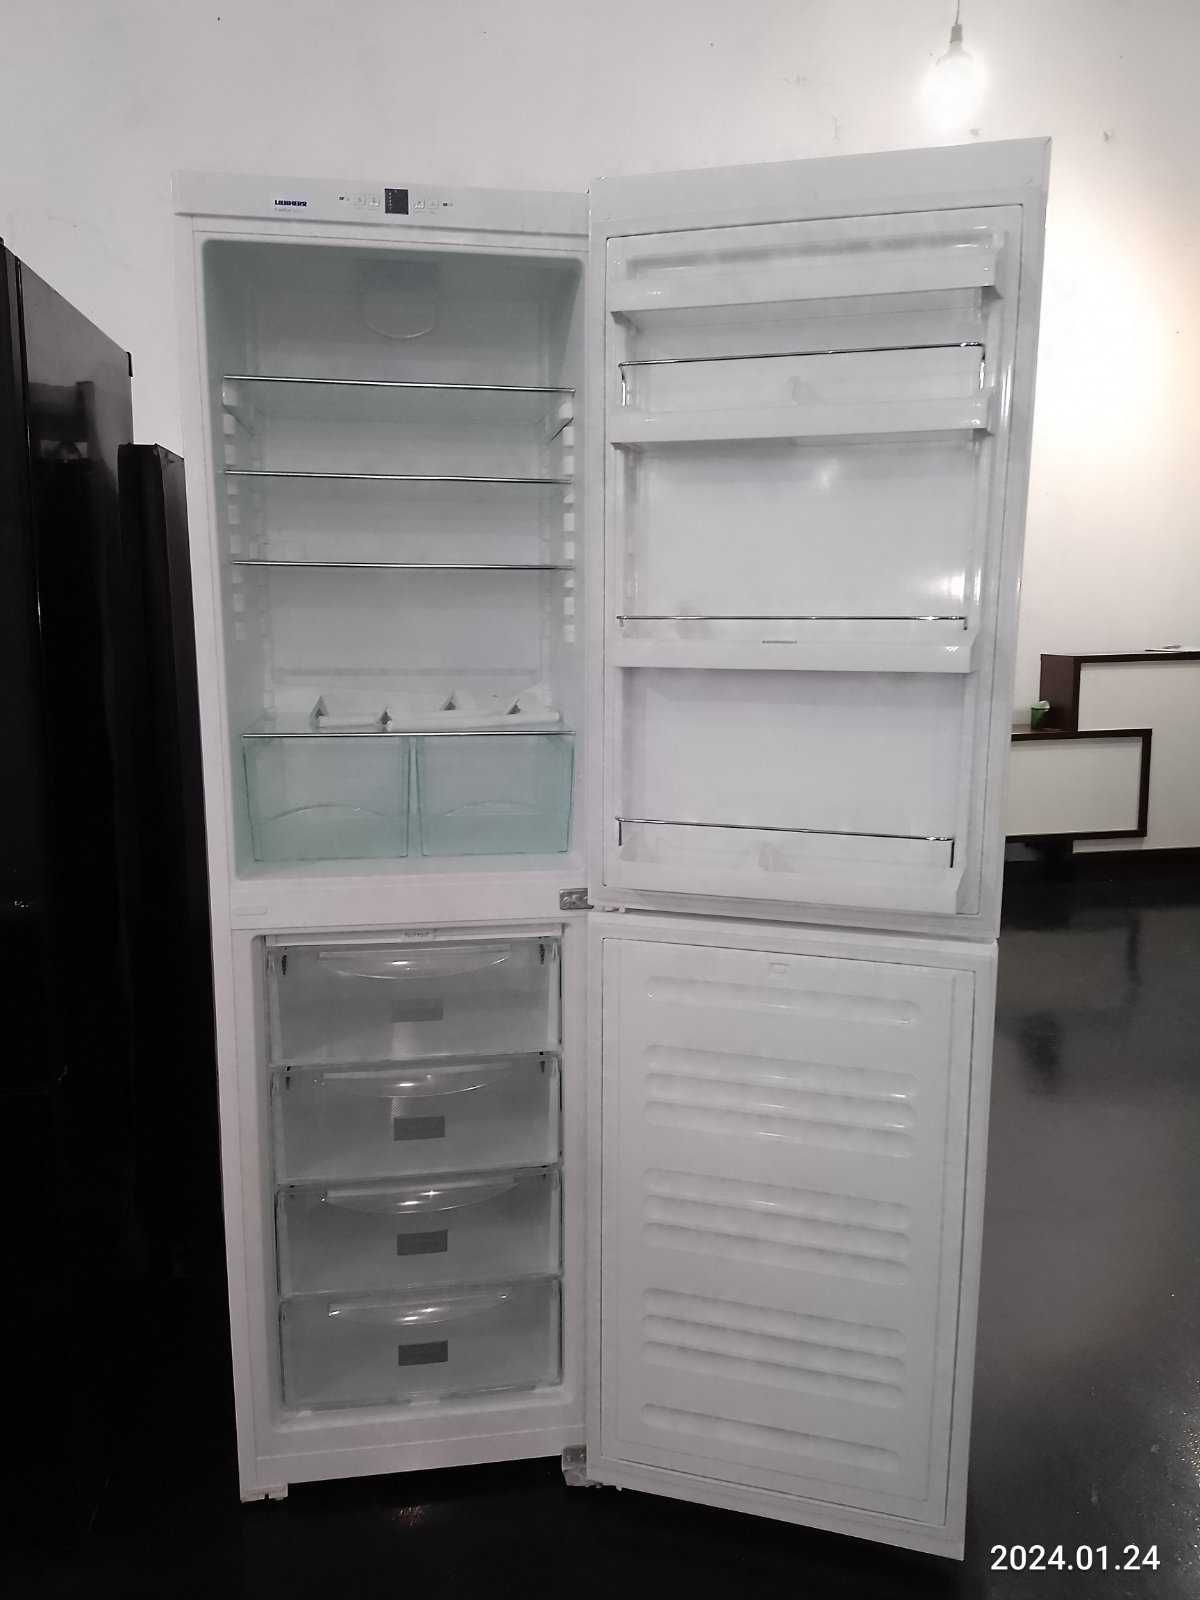 Холодильник Liebherr CUN 3933 білий 2,01 м крапля/ No Fros А++ Європи